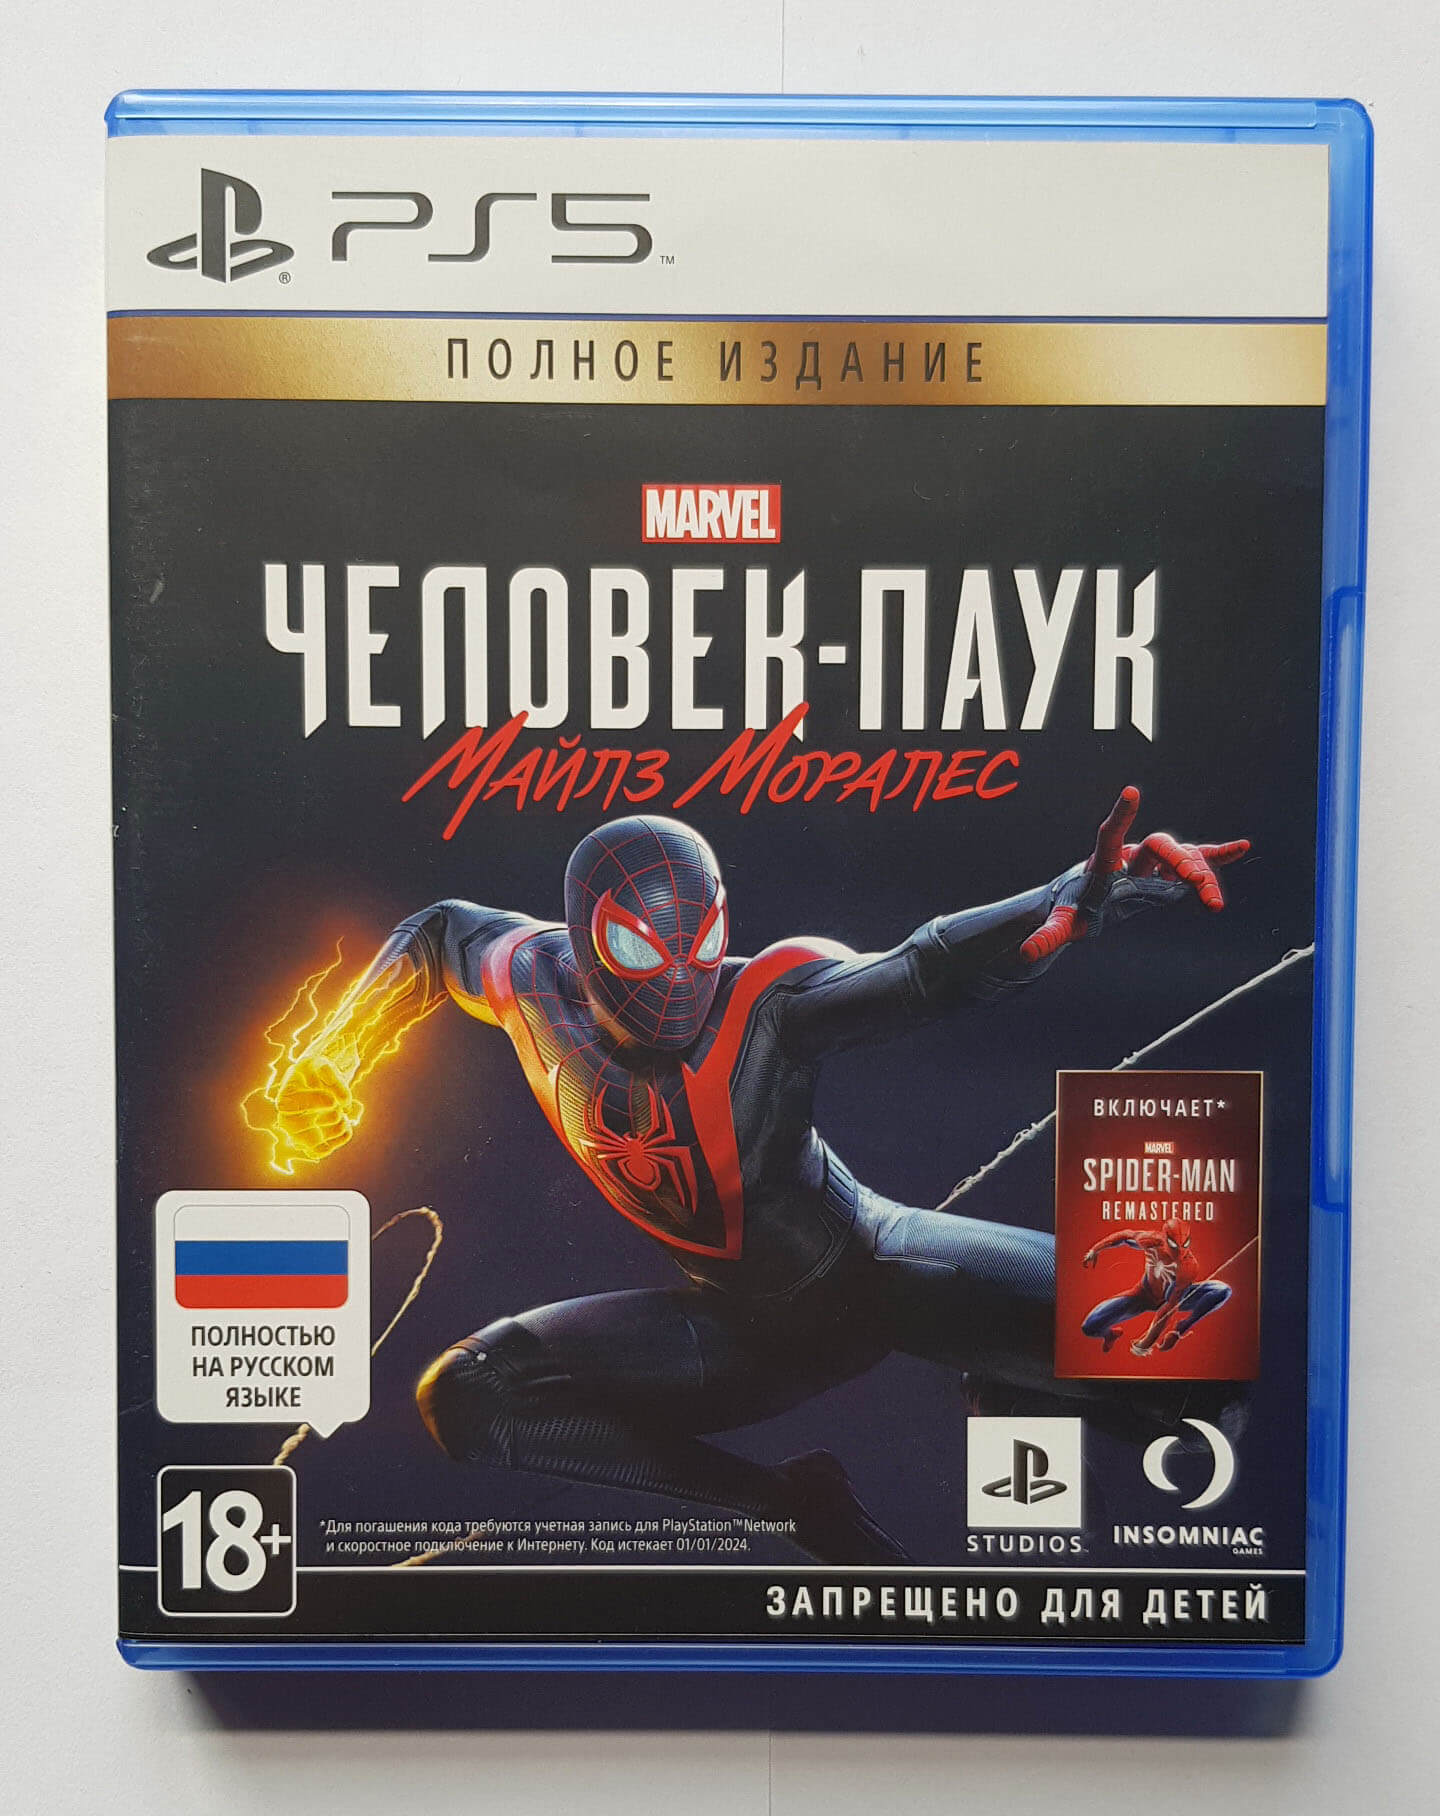 Лицензионный диск Spider-Man Remastered для PlayStation 5